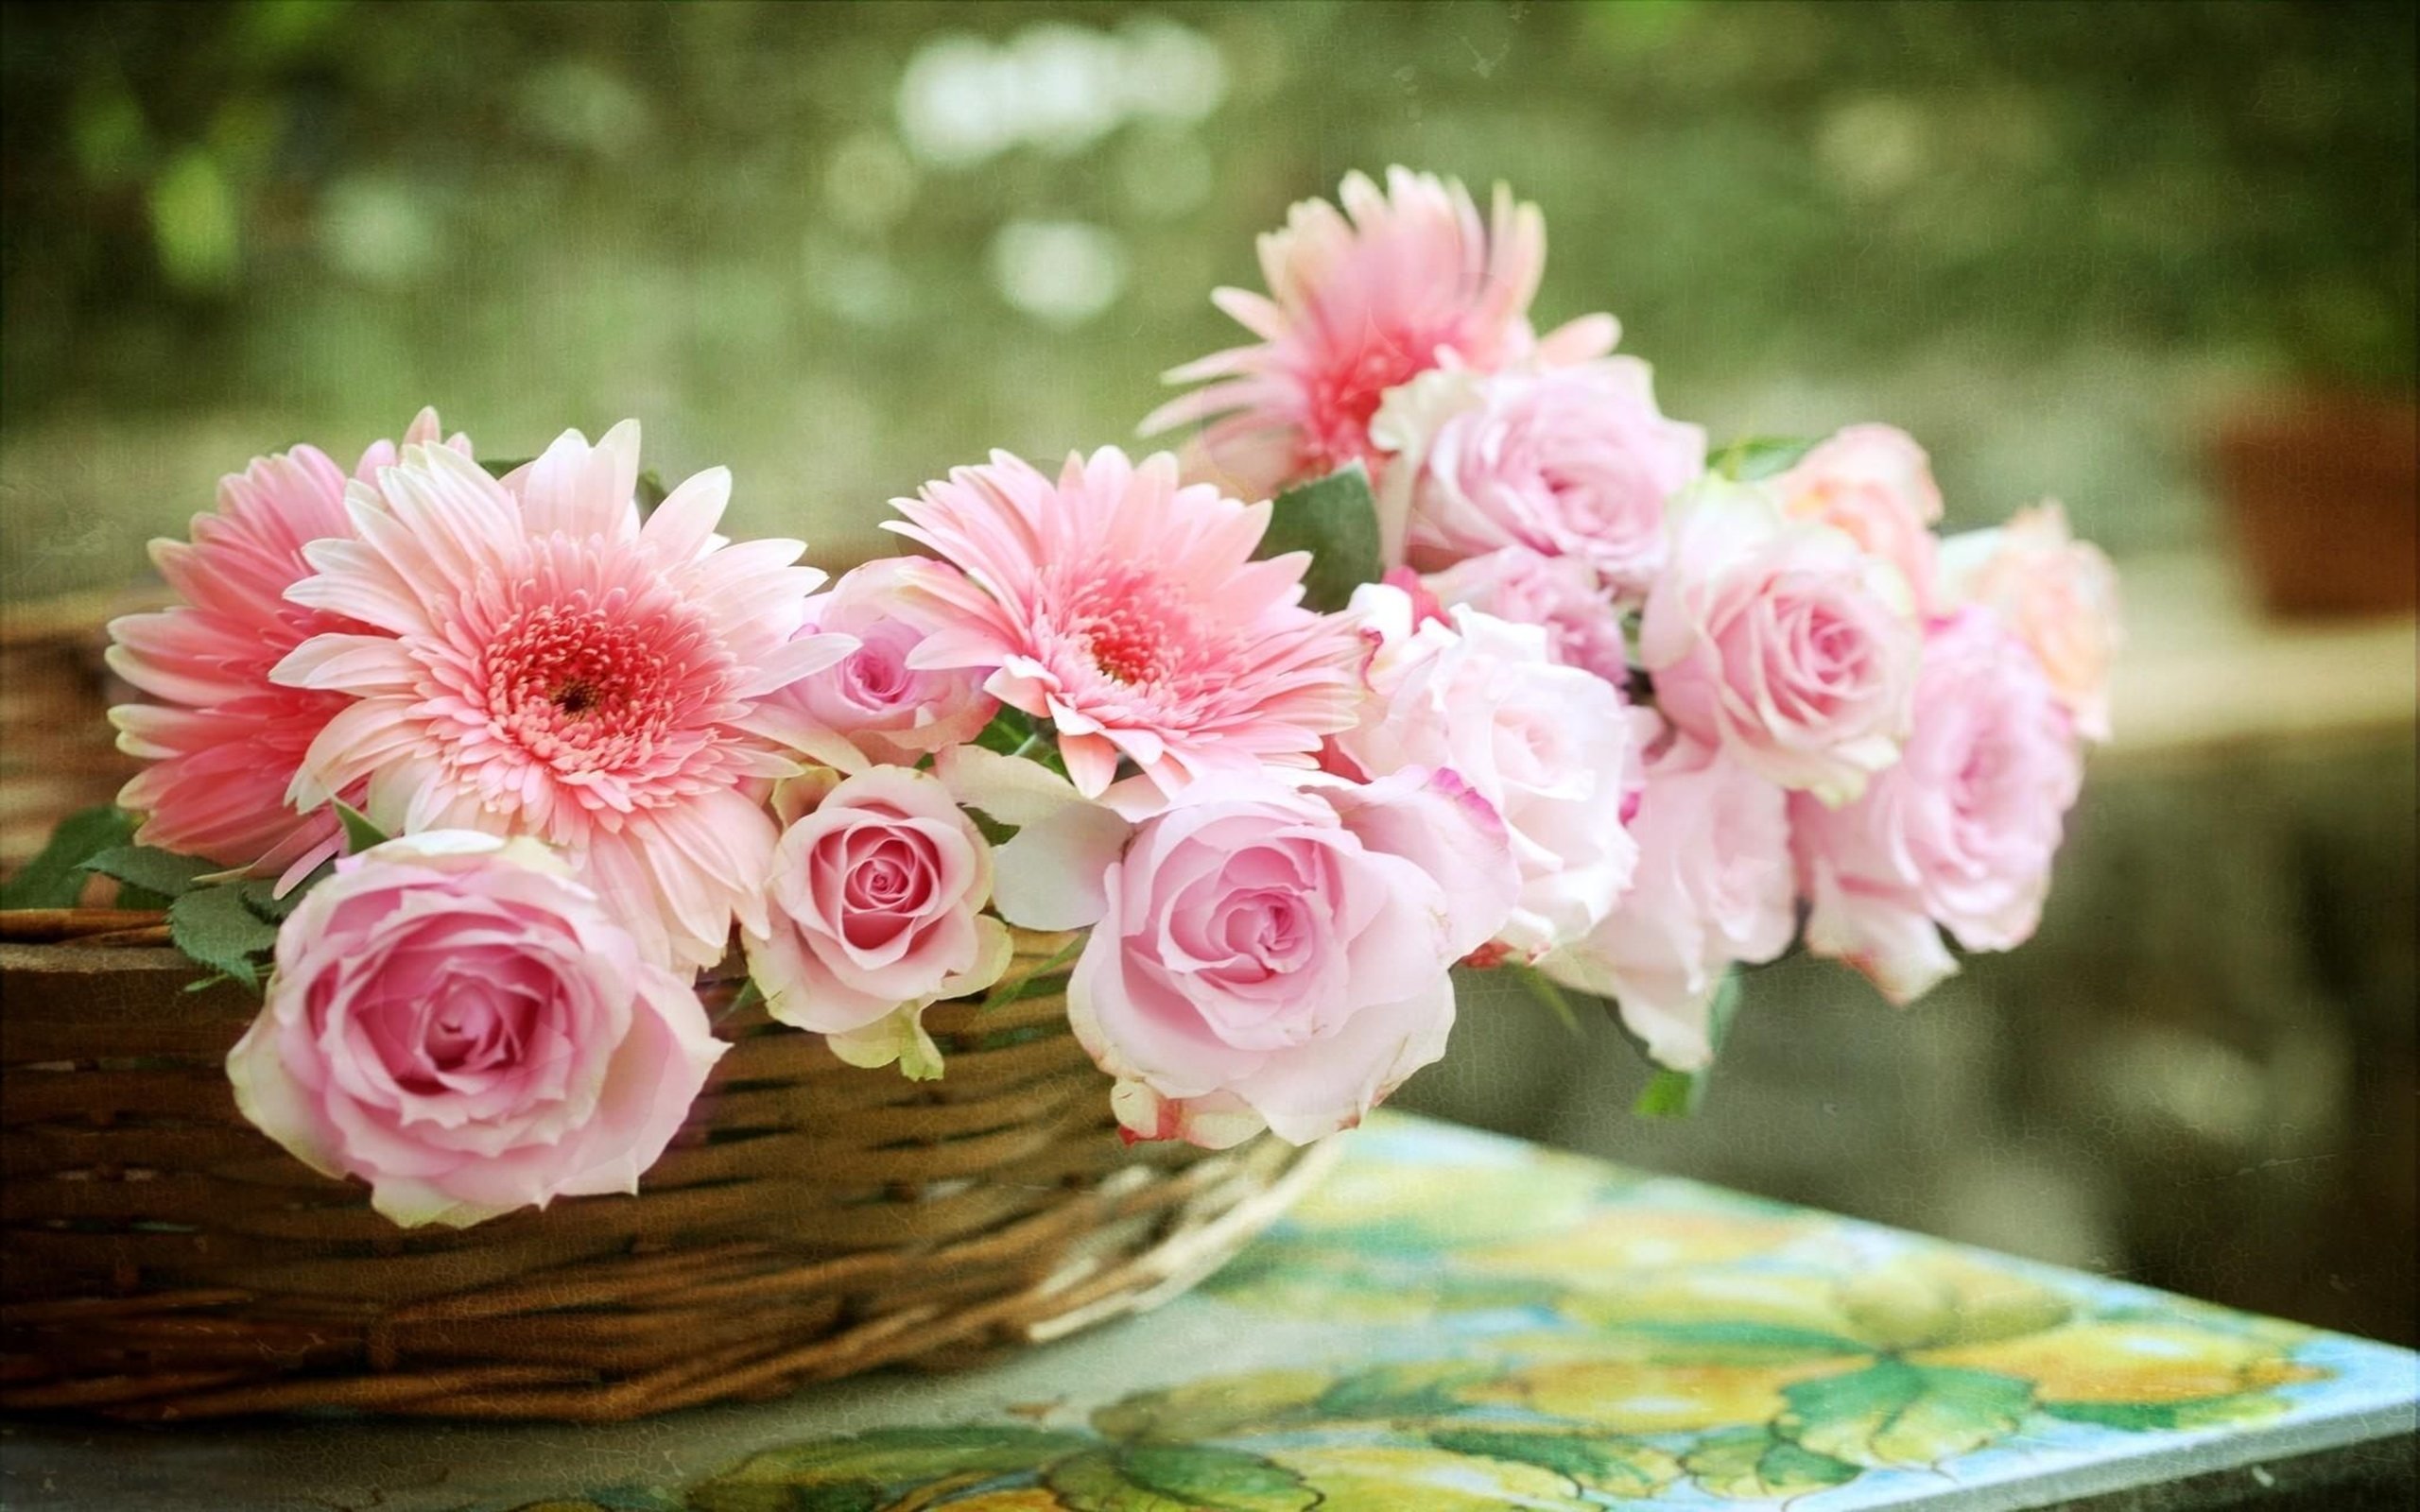 Поздравляю с праздником перевод. Красивые нежные цветы. Нежный букет. Поздравление с цветами. Благословенного дня.